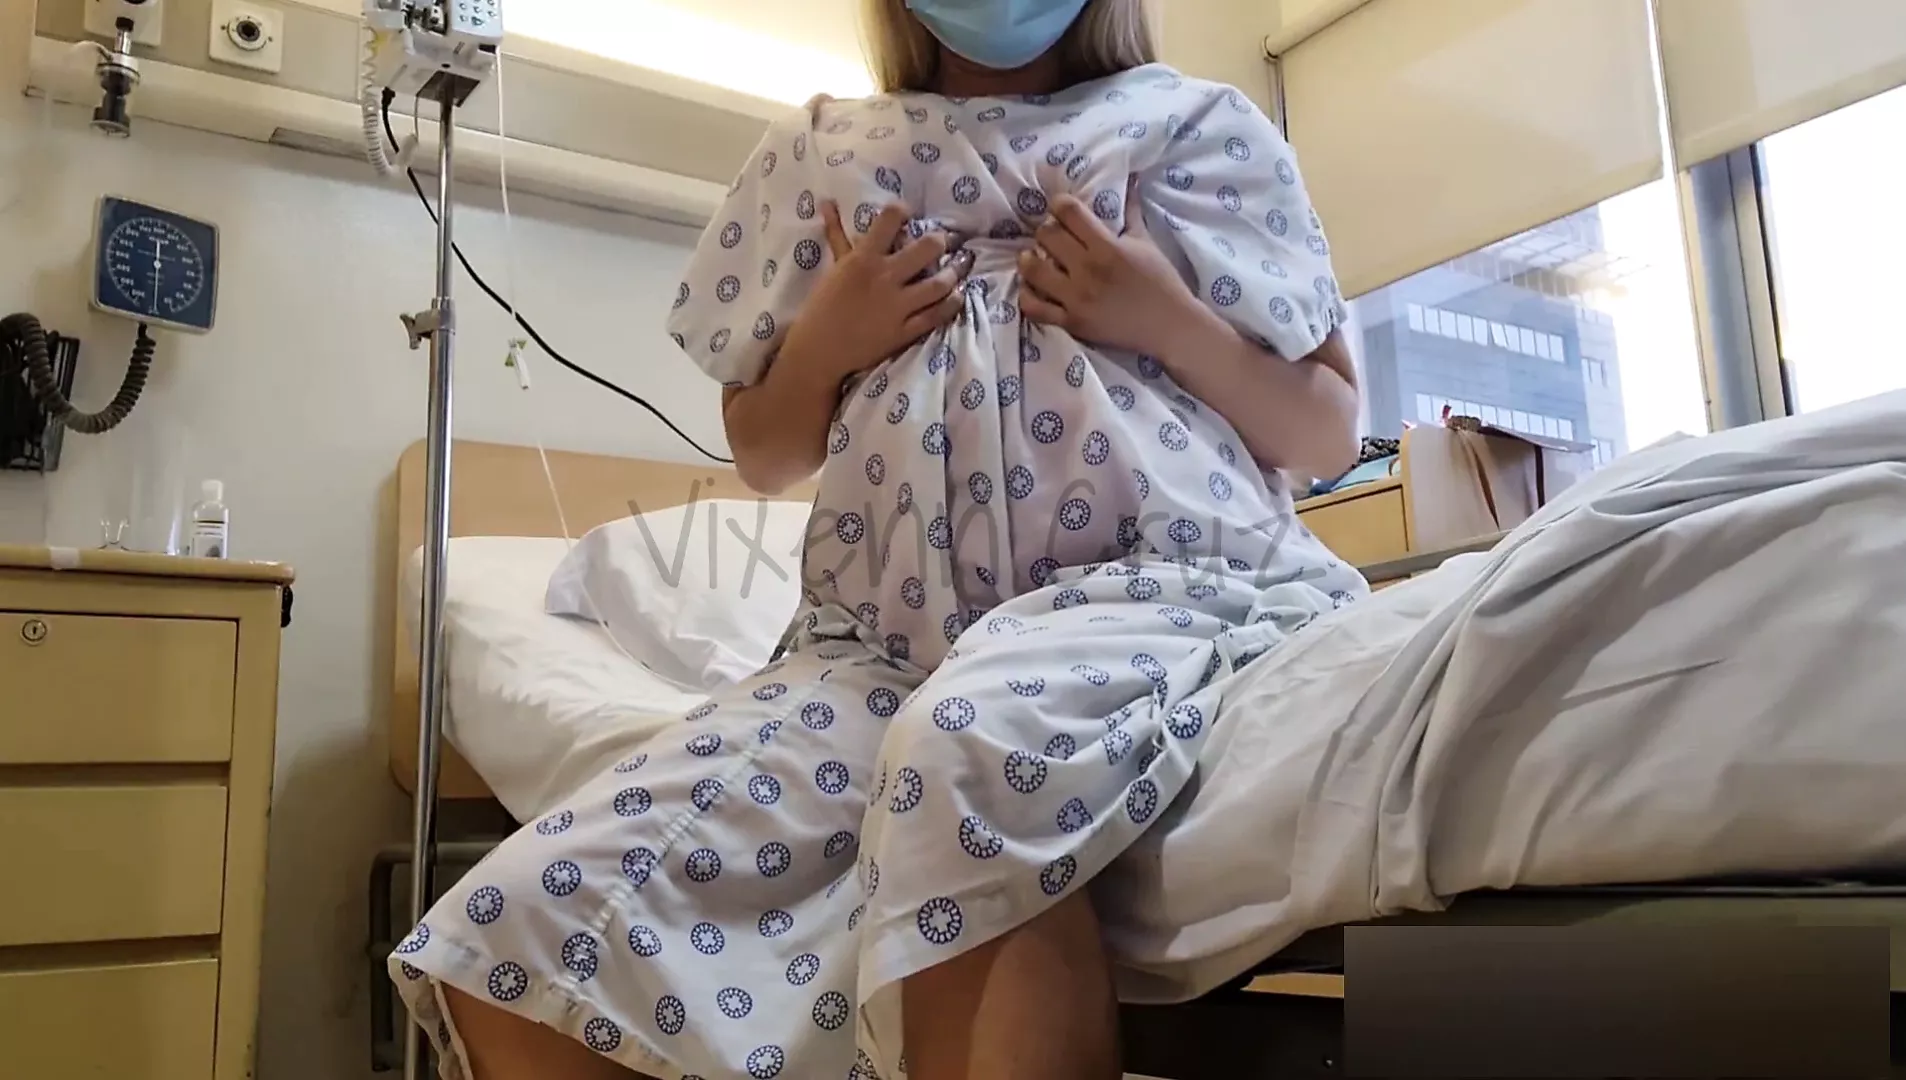 Riskante Öffentlichkeit – Geile Patientin spritzt im Krankenhausbett ab – Viral